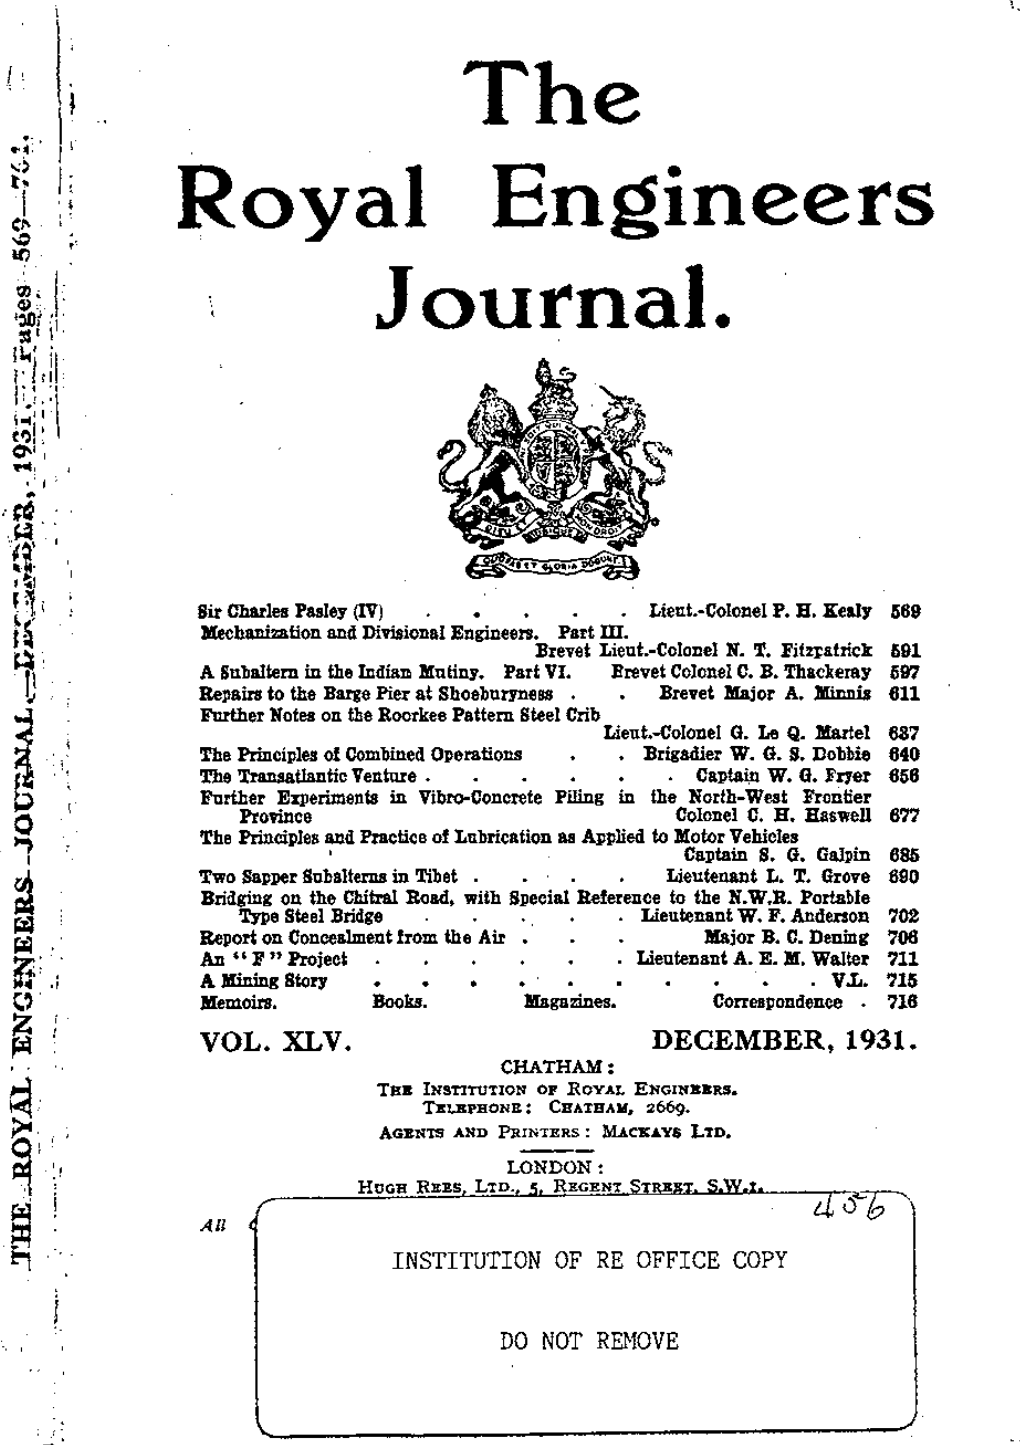 Royal Engineers Journal